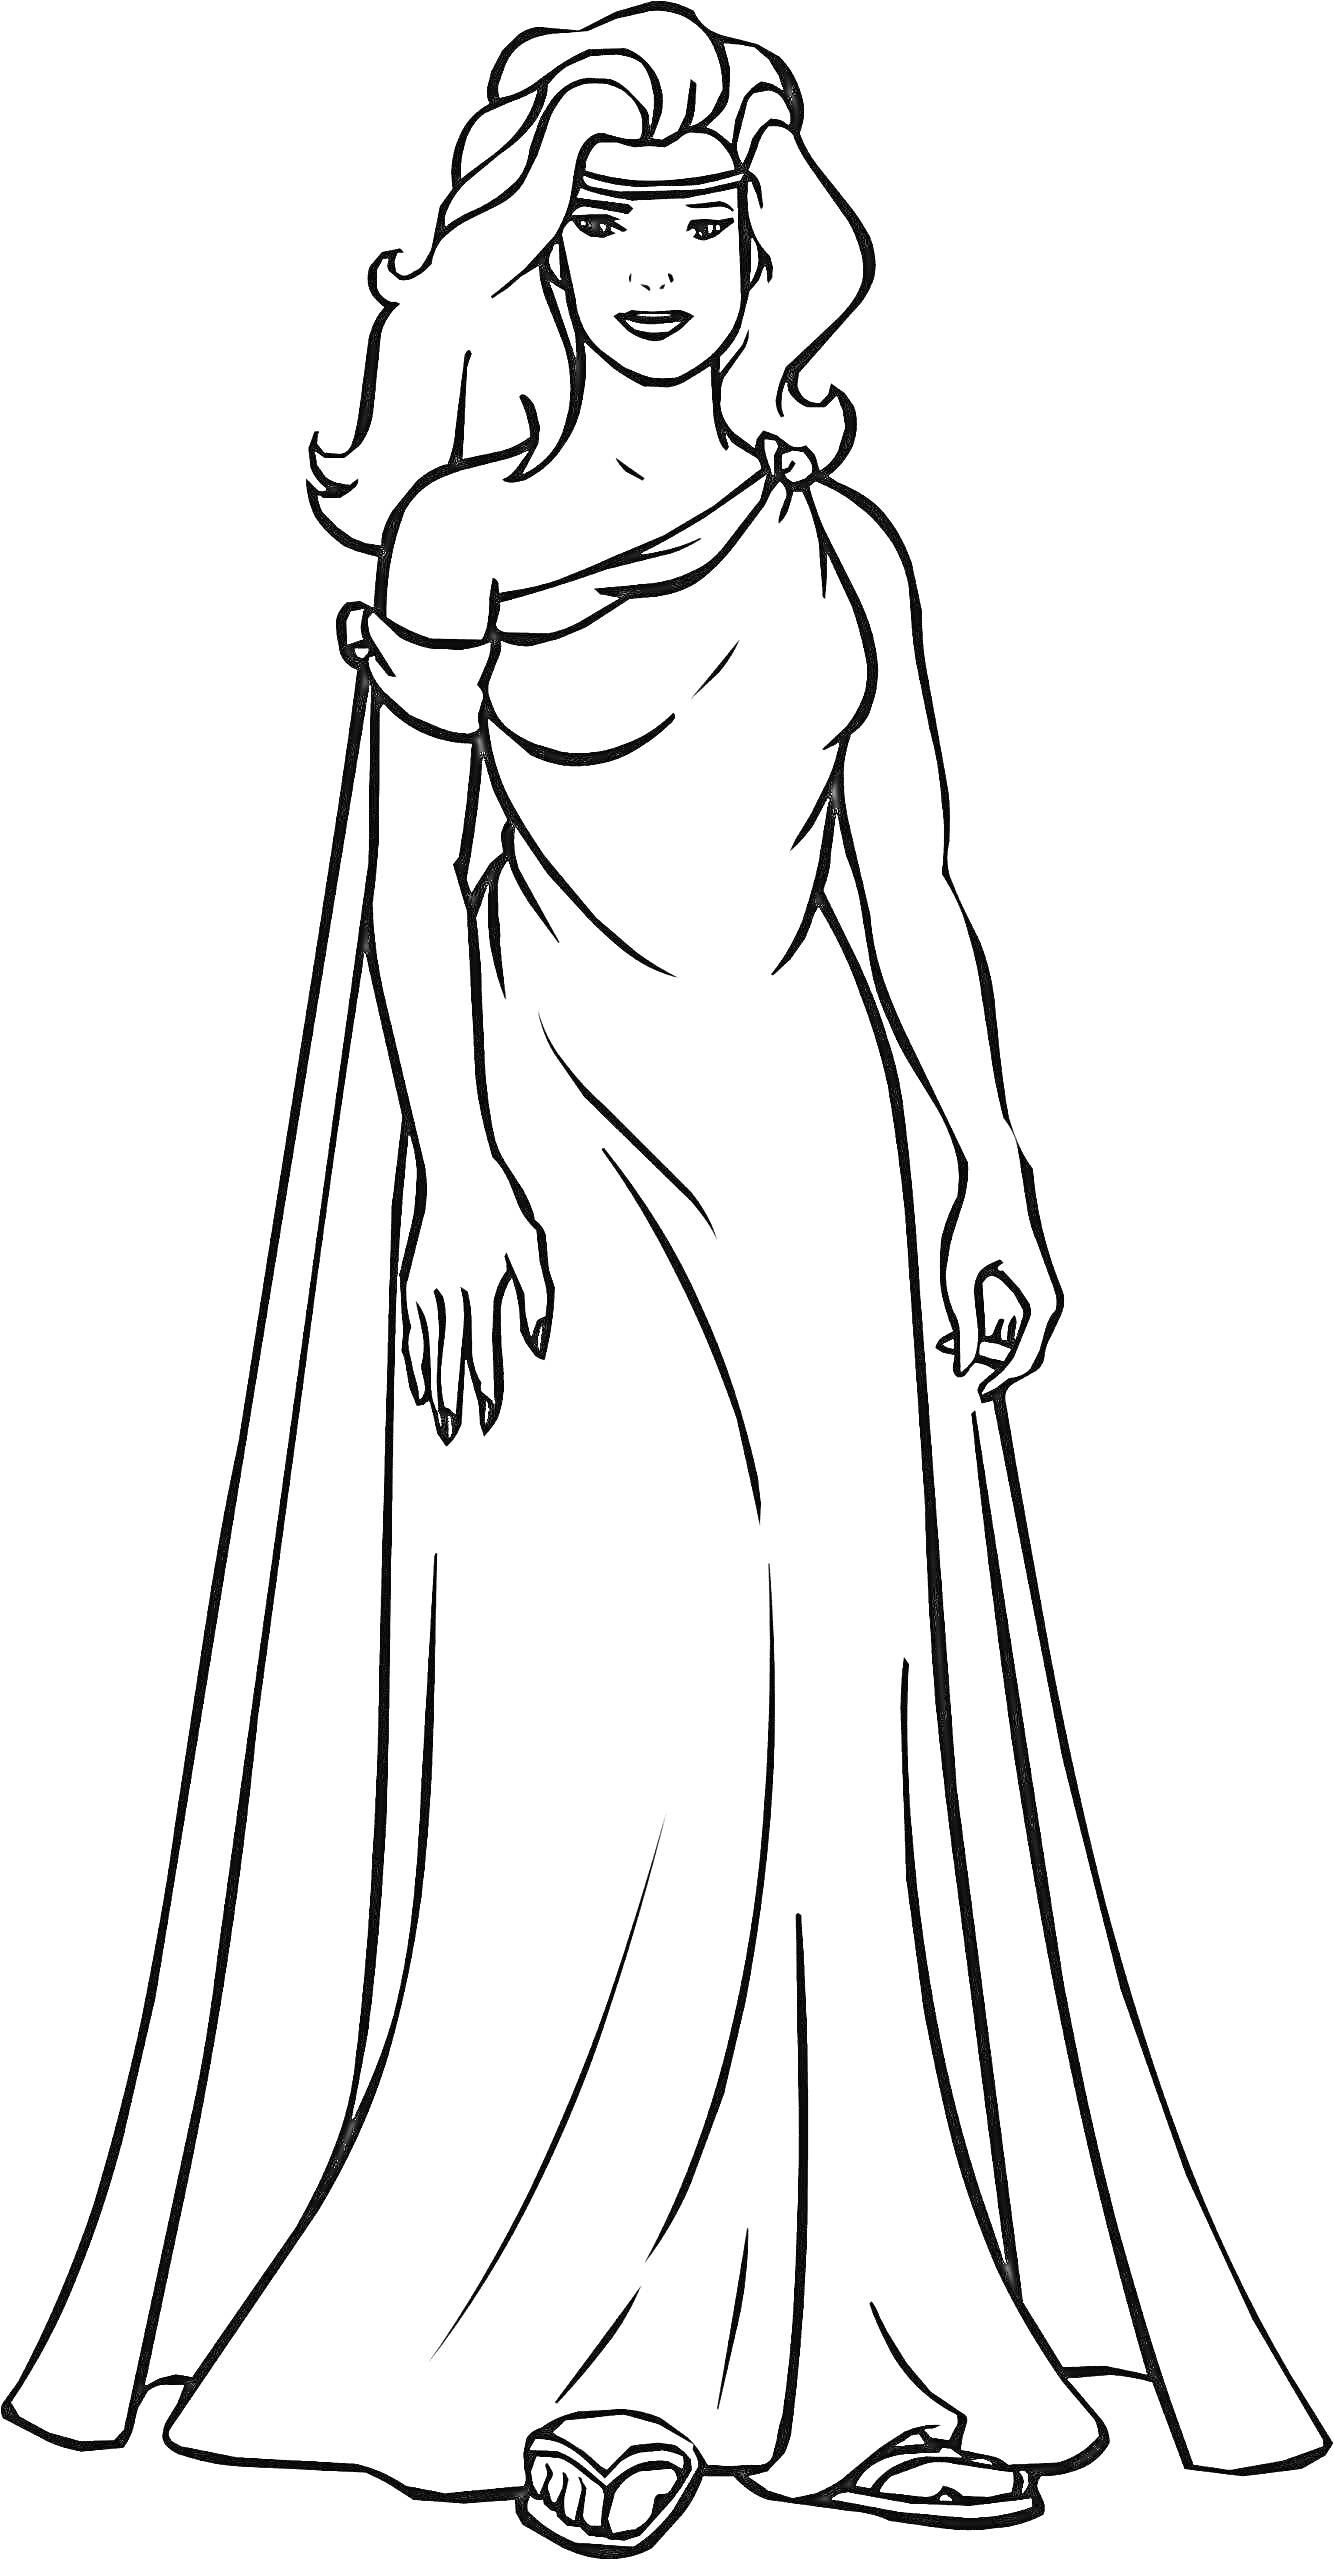 Раскраска Женщина в длинном платье с длинными волосами и босоножками